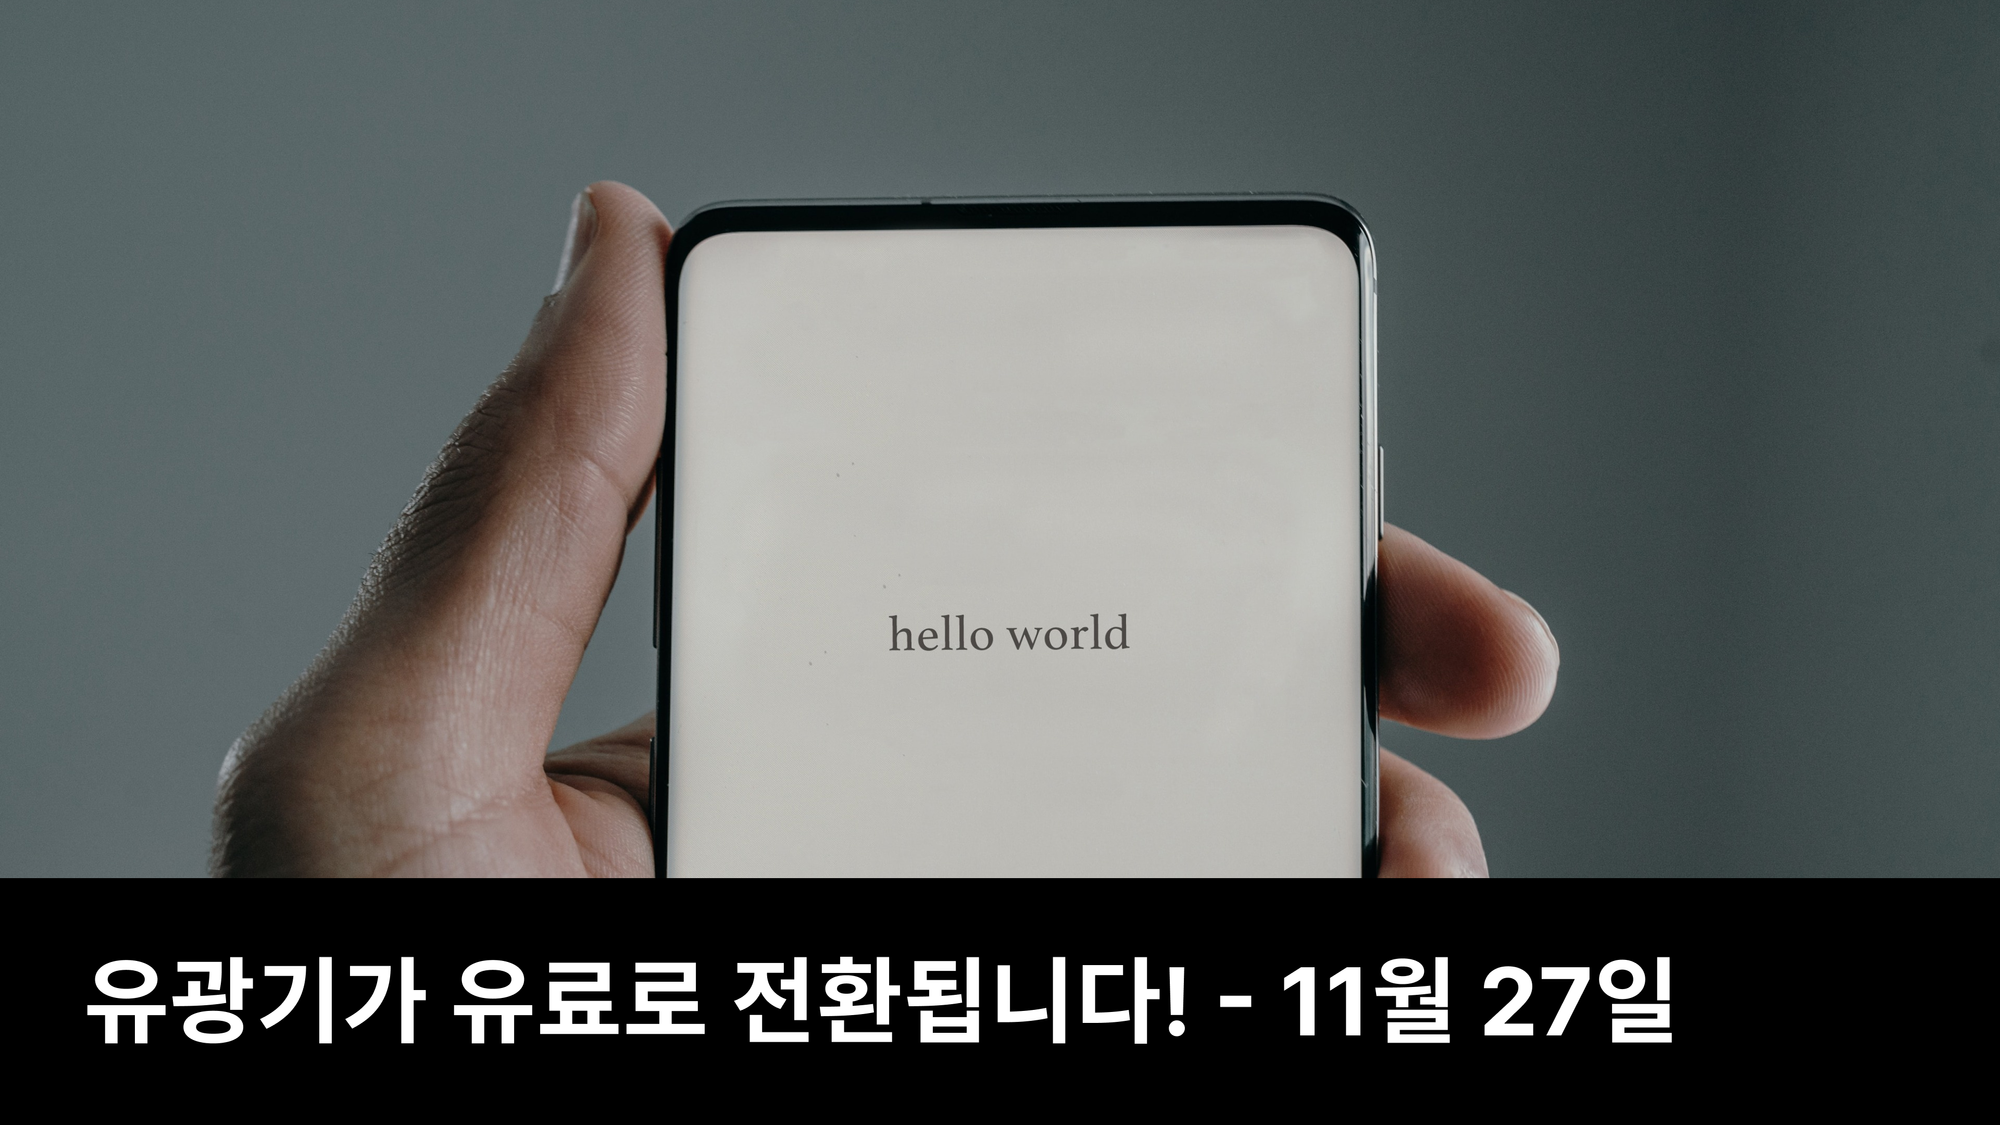 11월 27일, 유광기 유료화 전환 & 개발 계획 (feat. 얼리버드 할인)